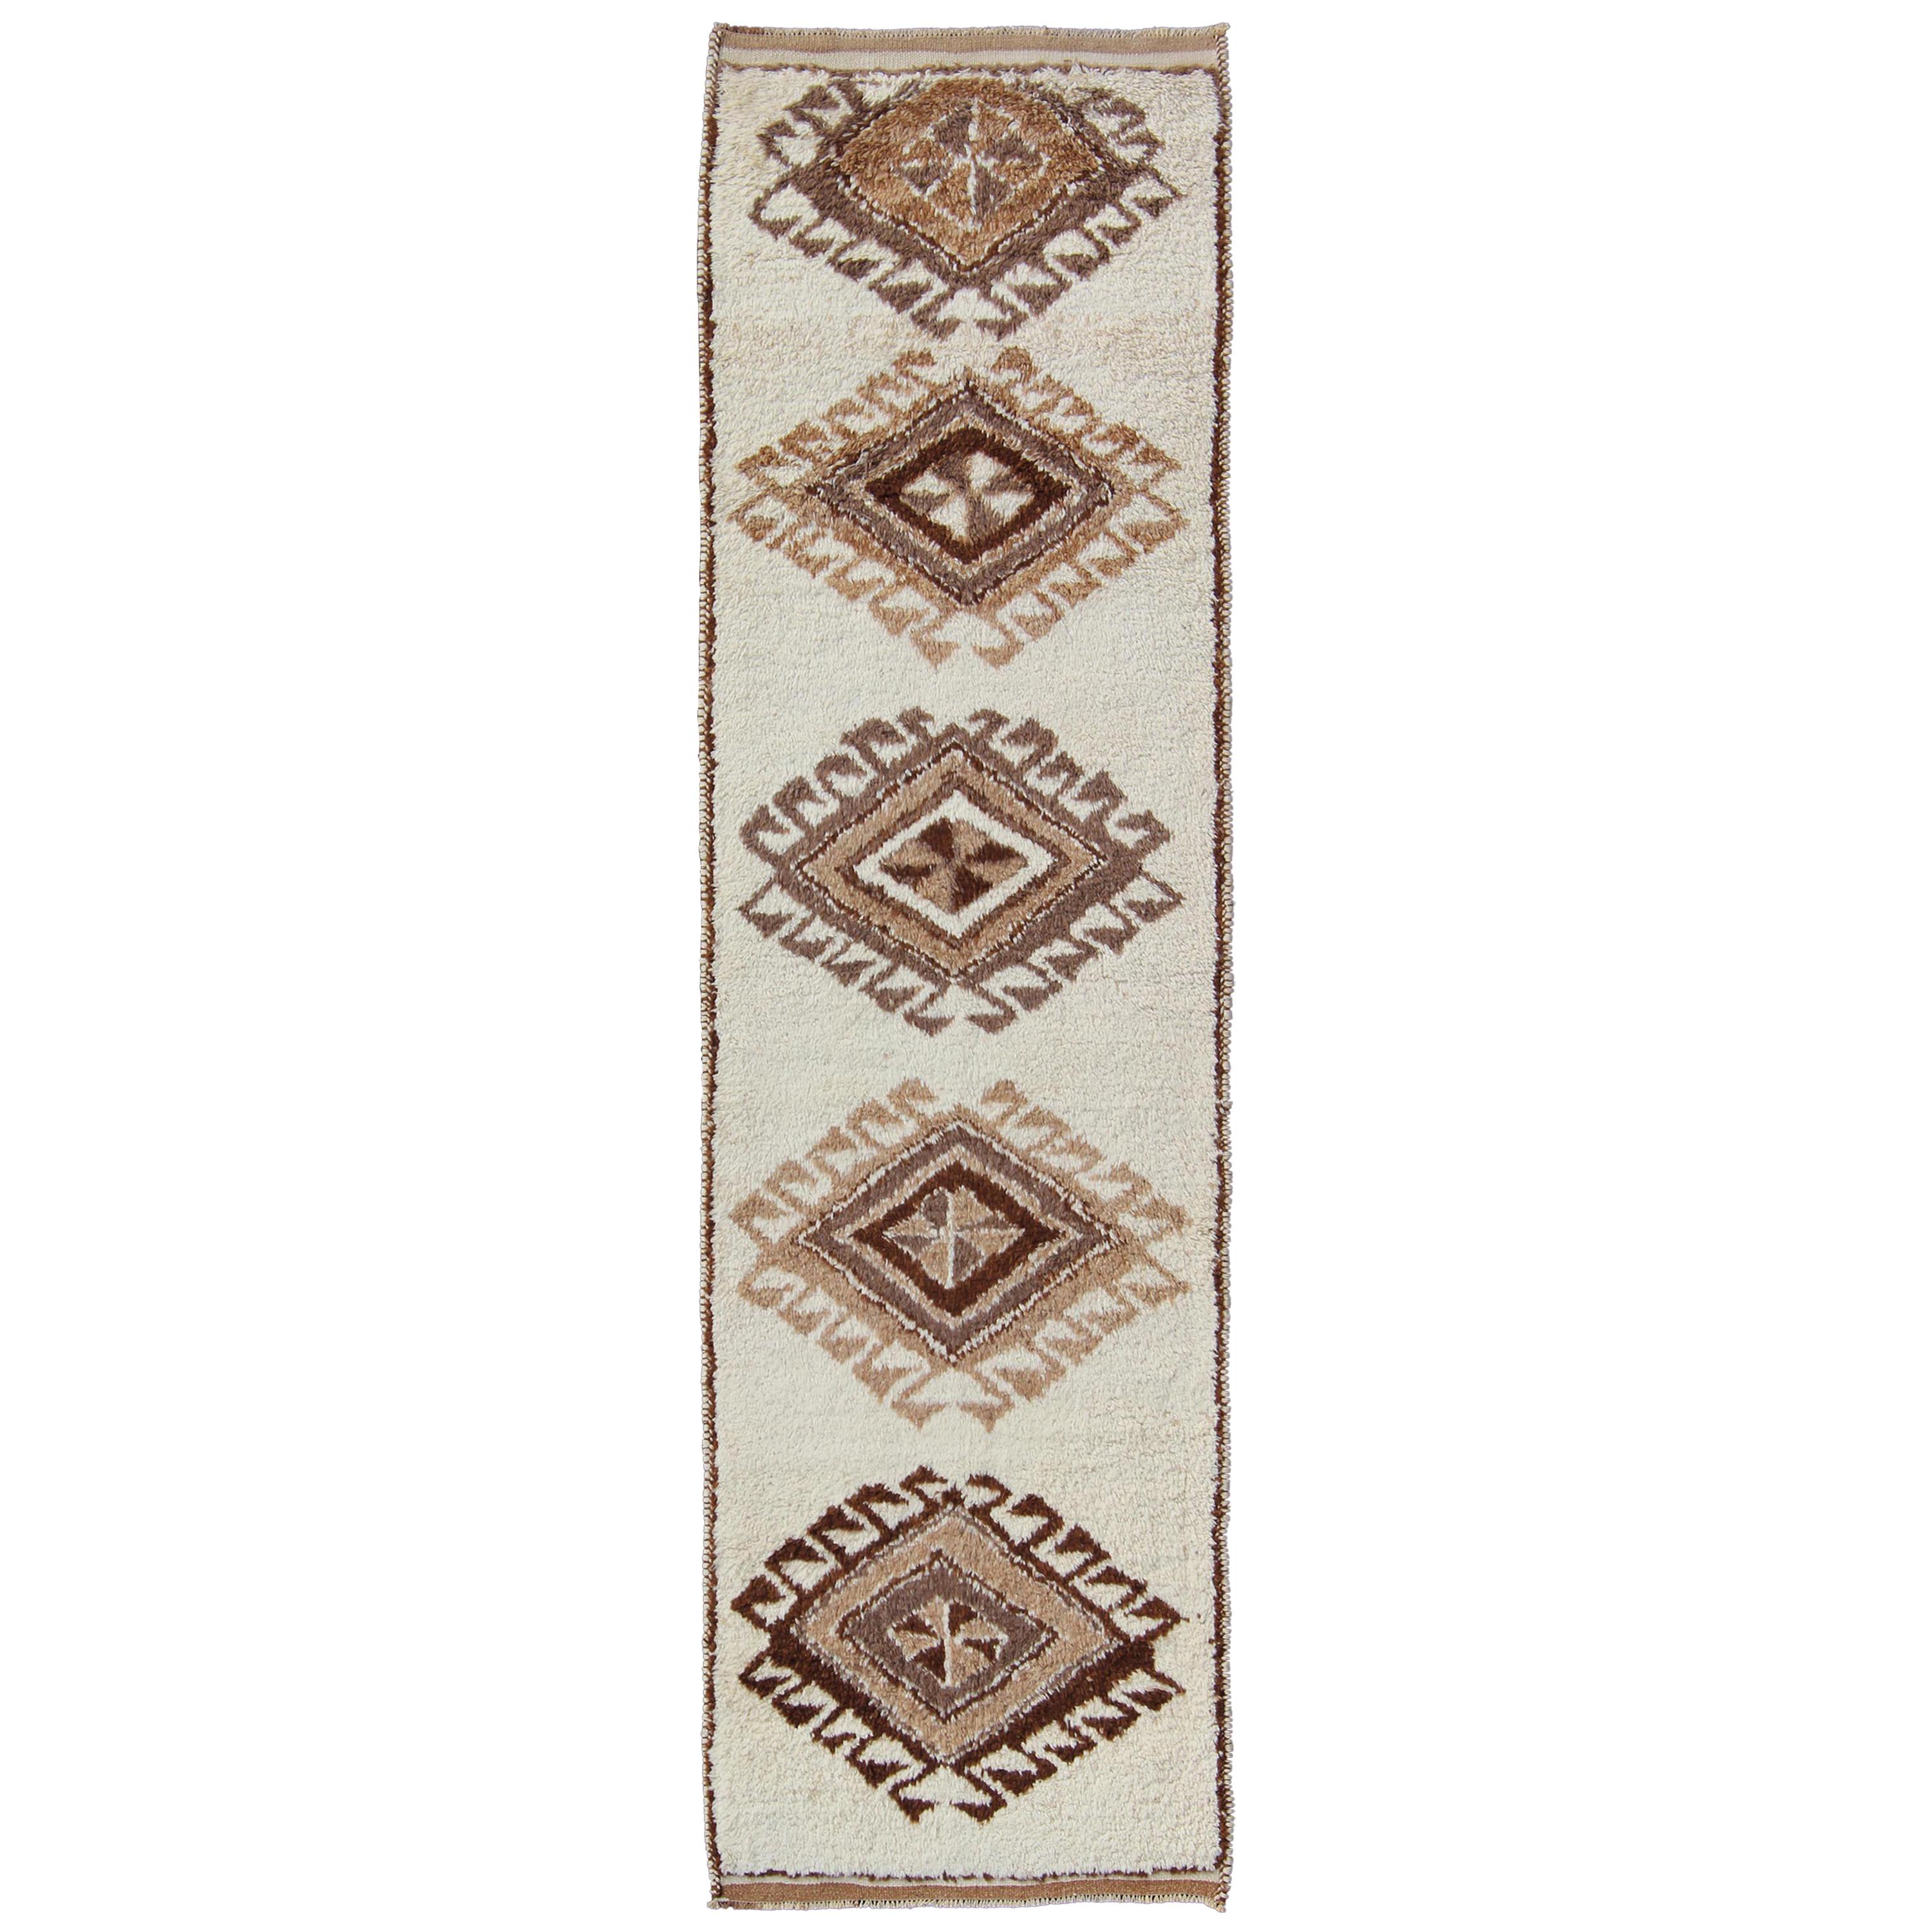 Tapis de galerie turc Tulu vintage avec motif tribal de diamants en crème et marron